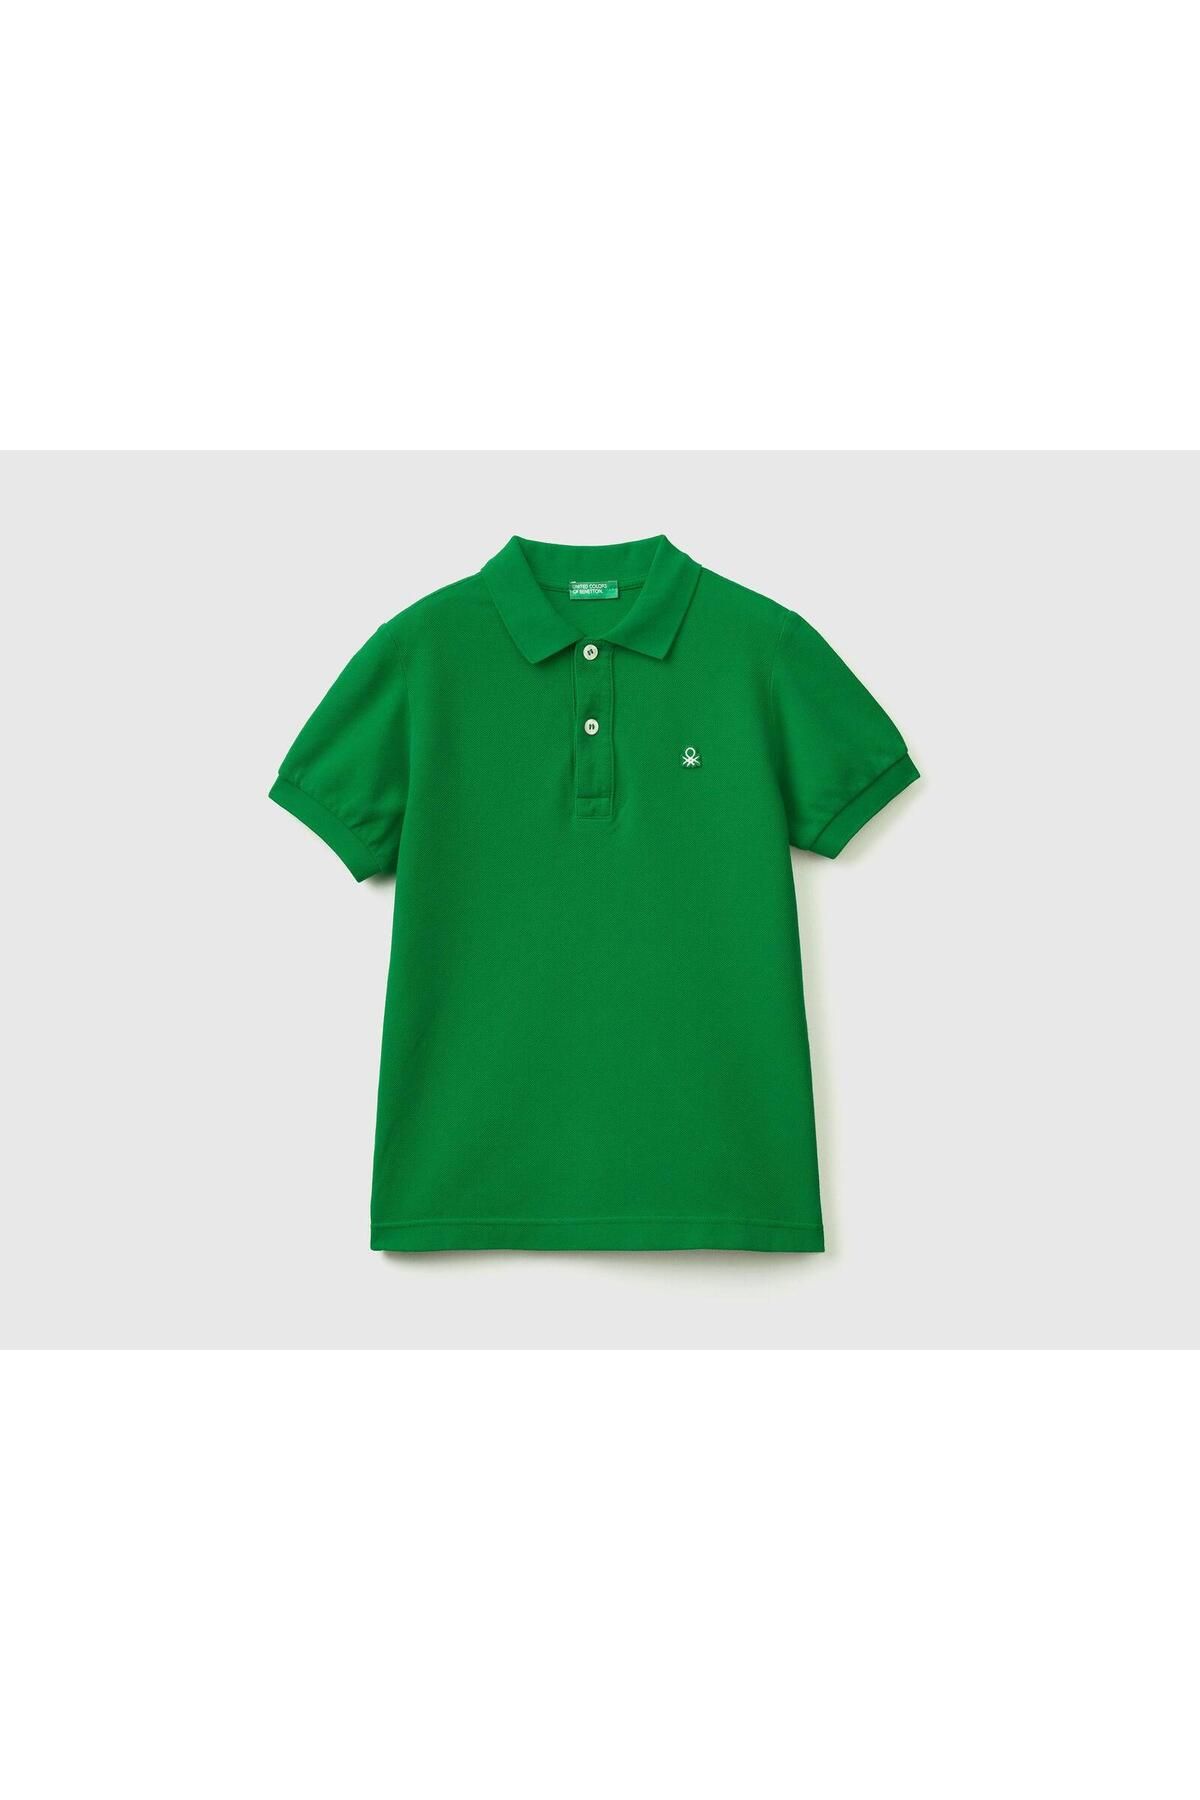 Benetton United Colors of Benetton Erkek Çocuk Yeşil Polo Yaka T-shirt